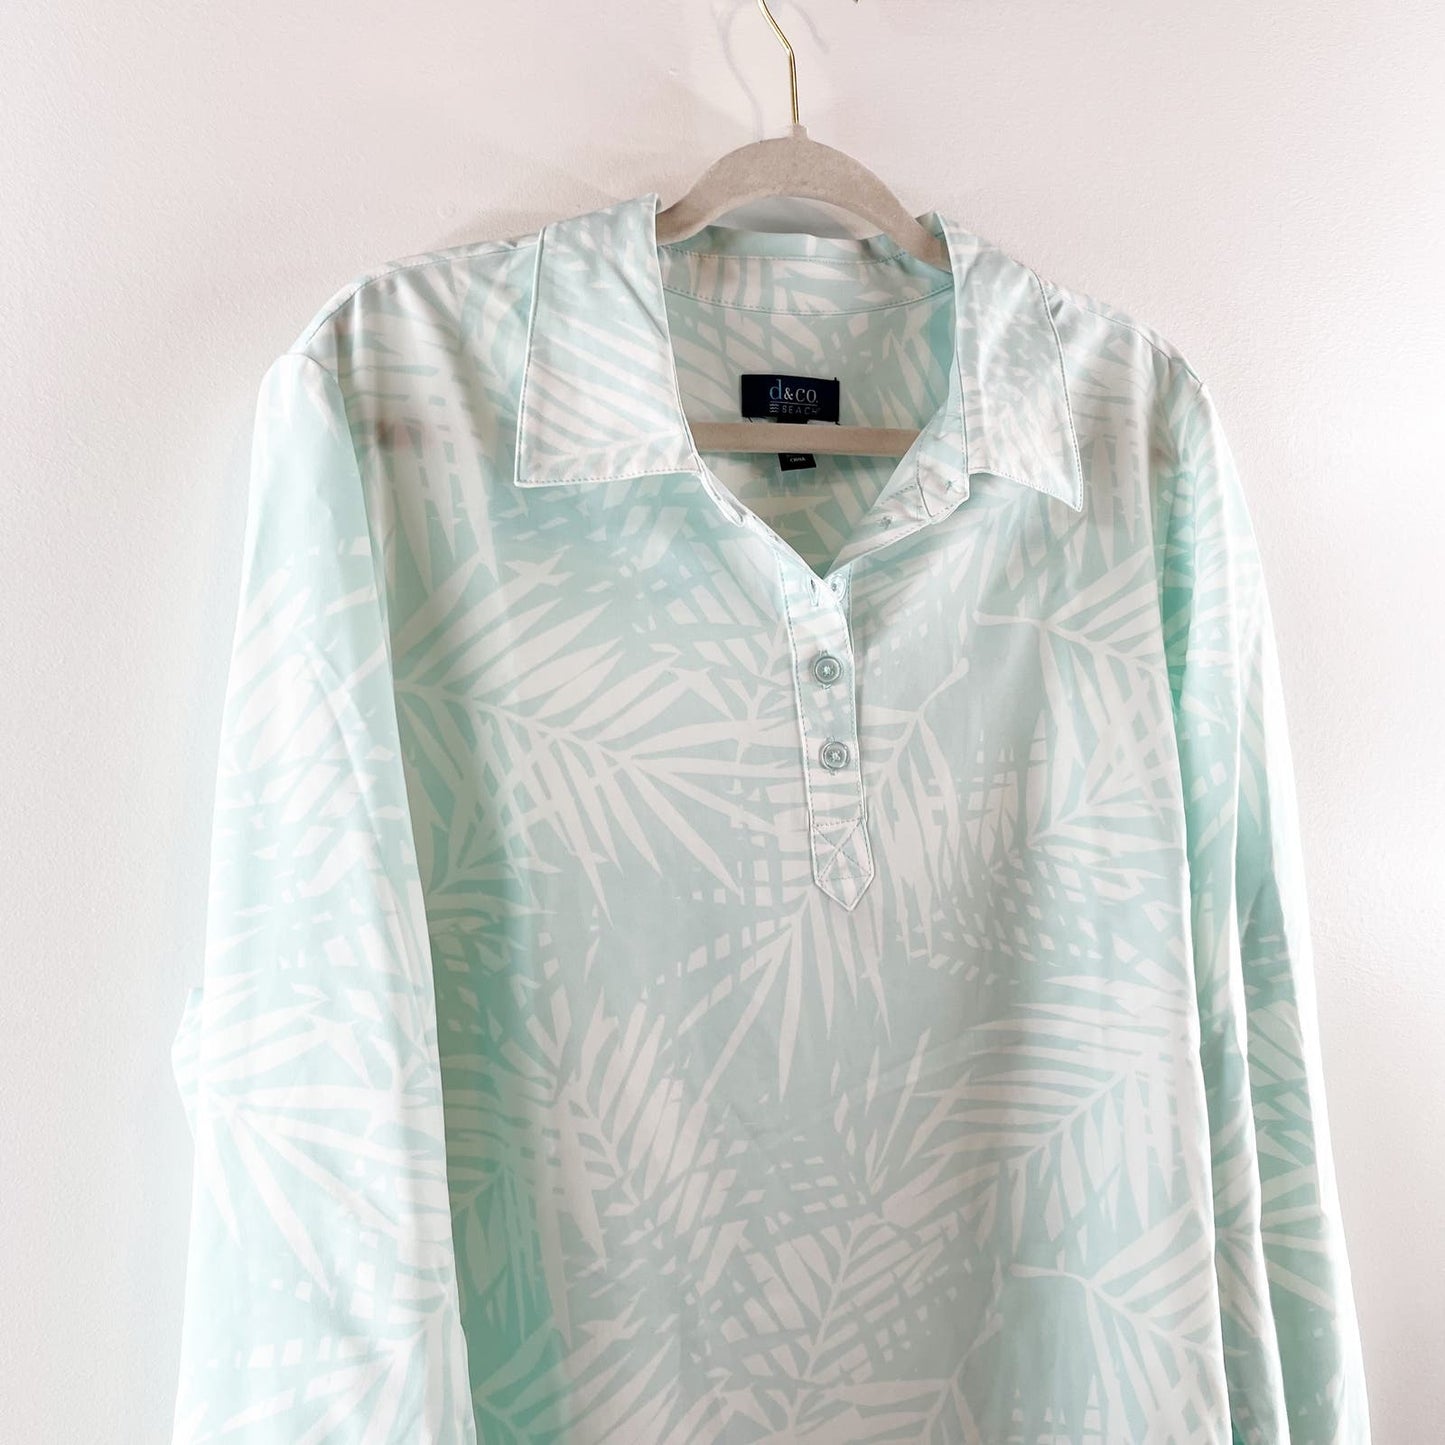 Denim & Co Beach Quick Dry Long Sleeve Cover Up Shirt Dress Green XL